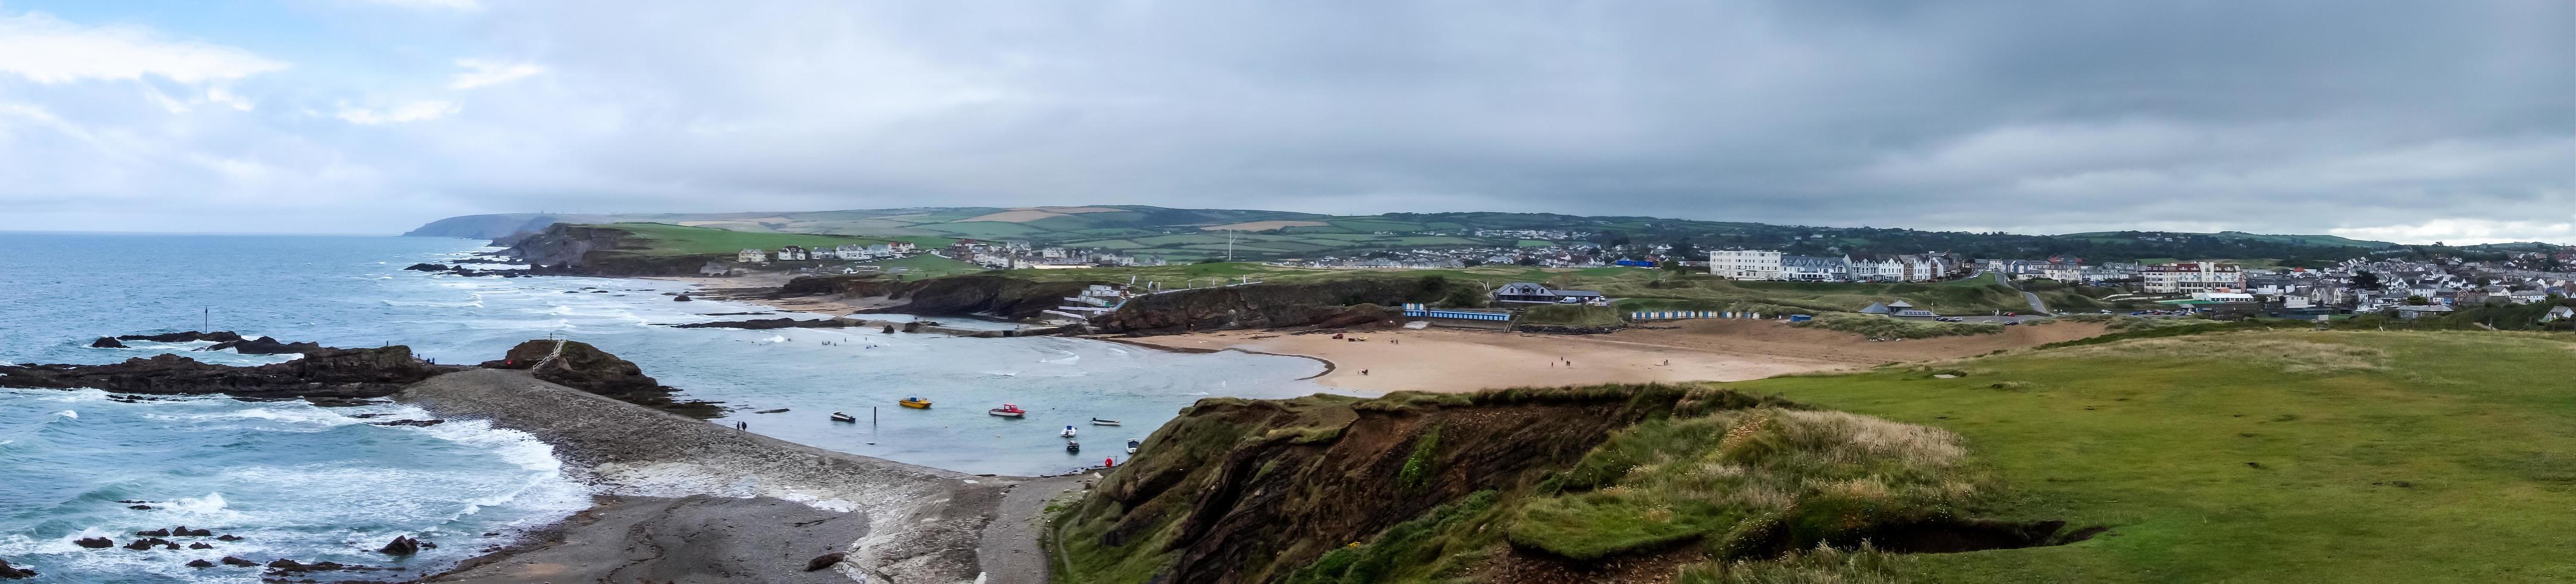 Malerischer Blick auf die Küste von Bude in Cornwall foto